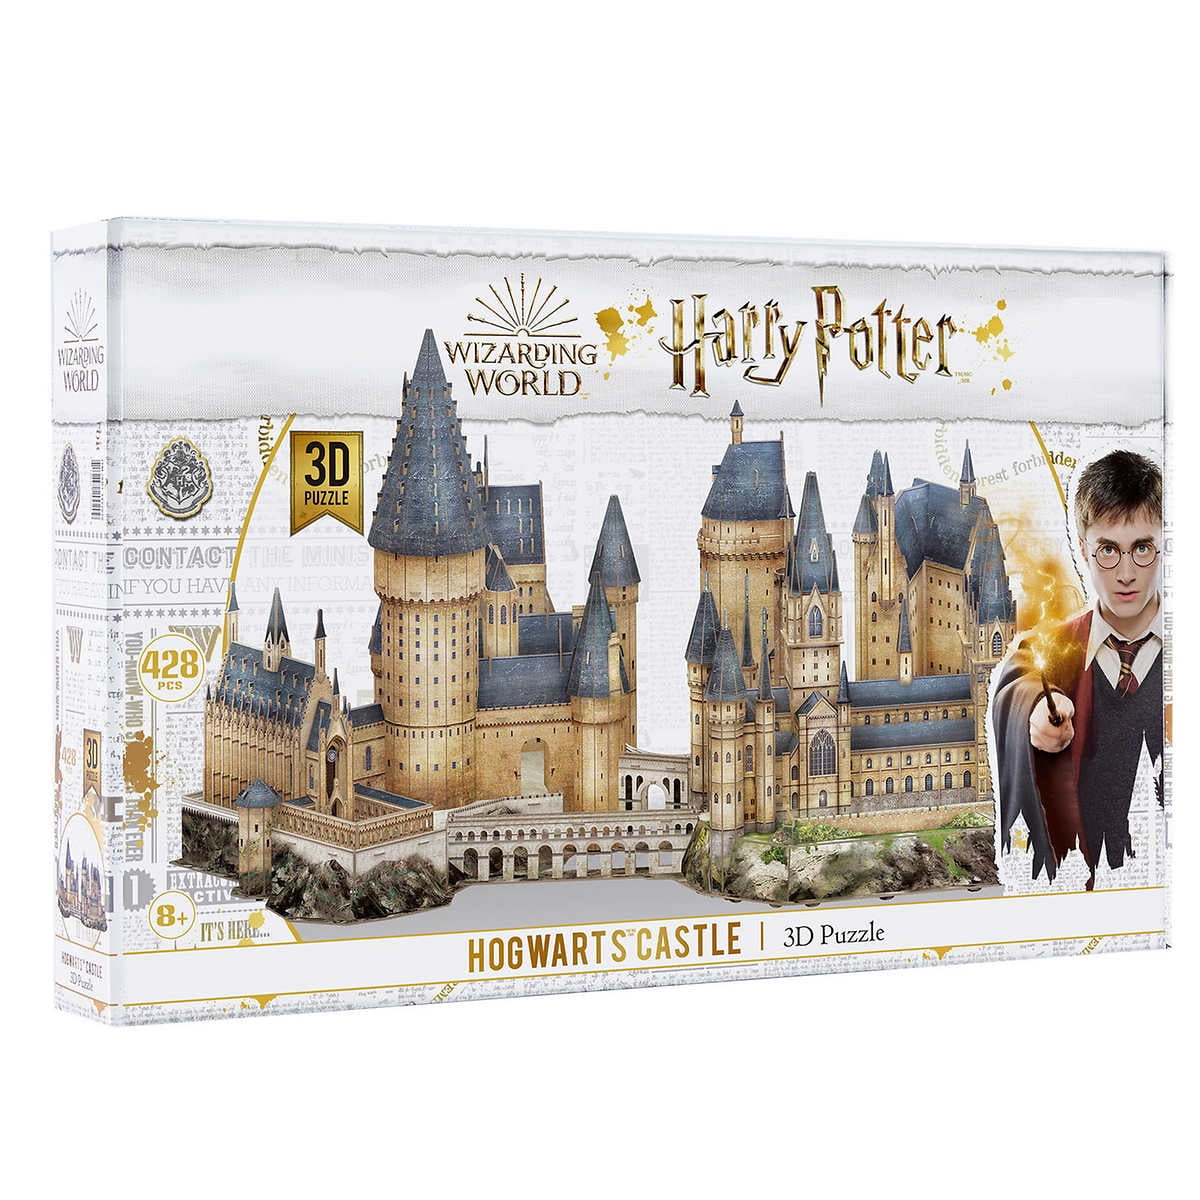 4D Cityscapes Brand NEW! Harry Potter Hogwarts Castle 3D Puzzle 428 Pieces 